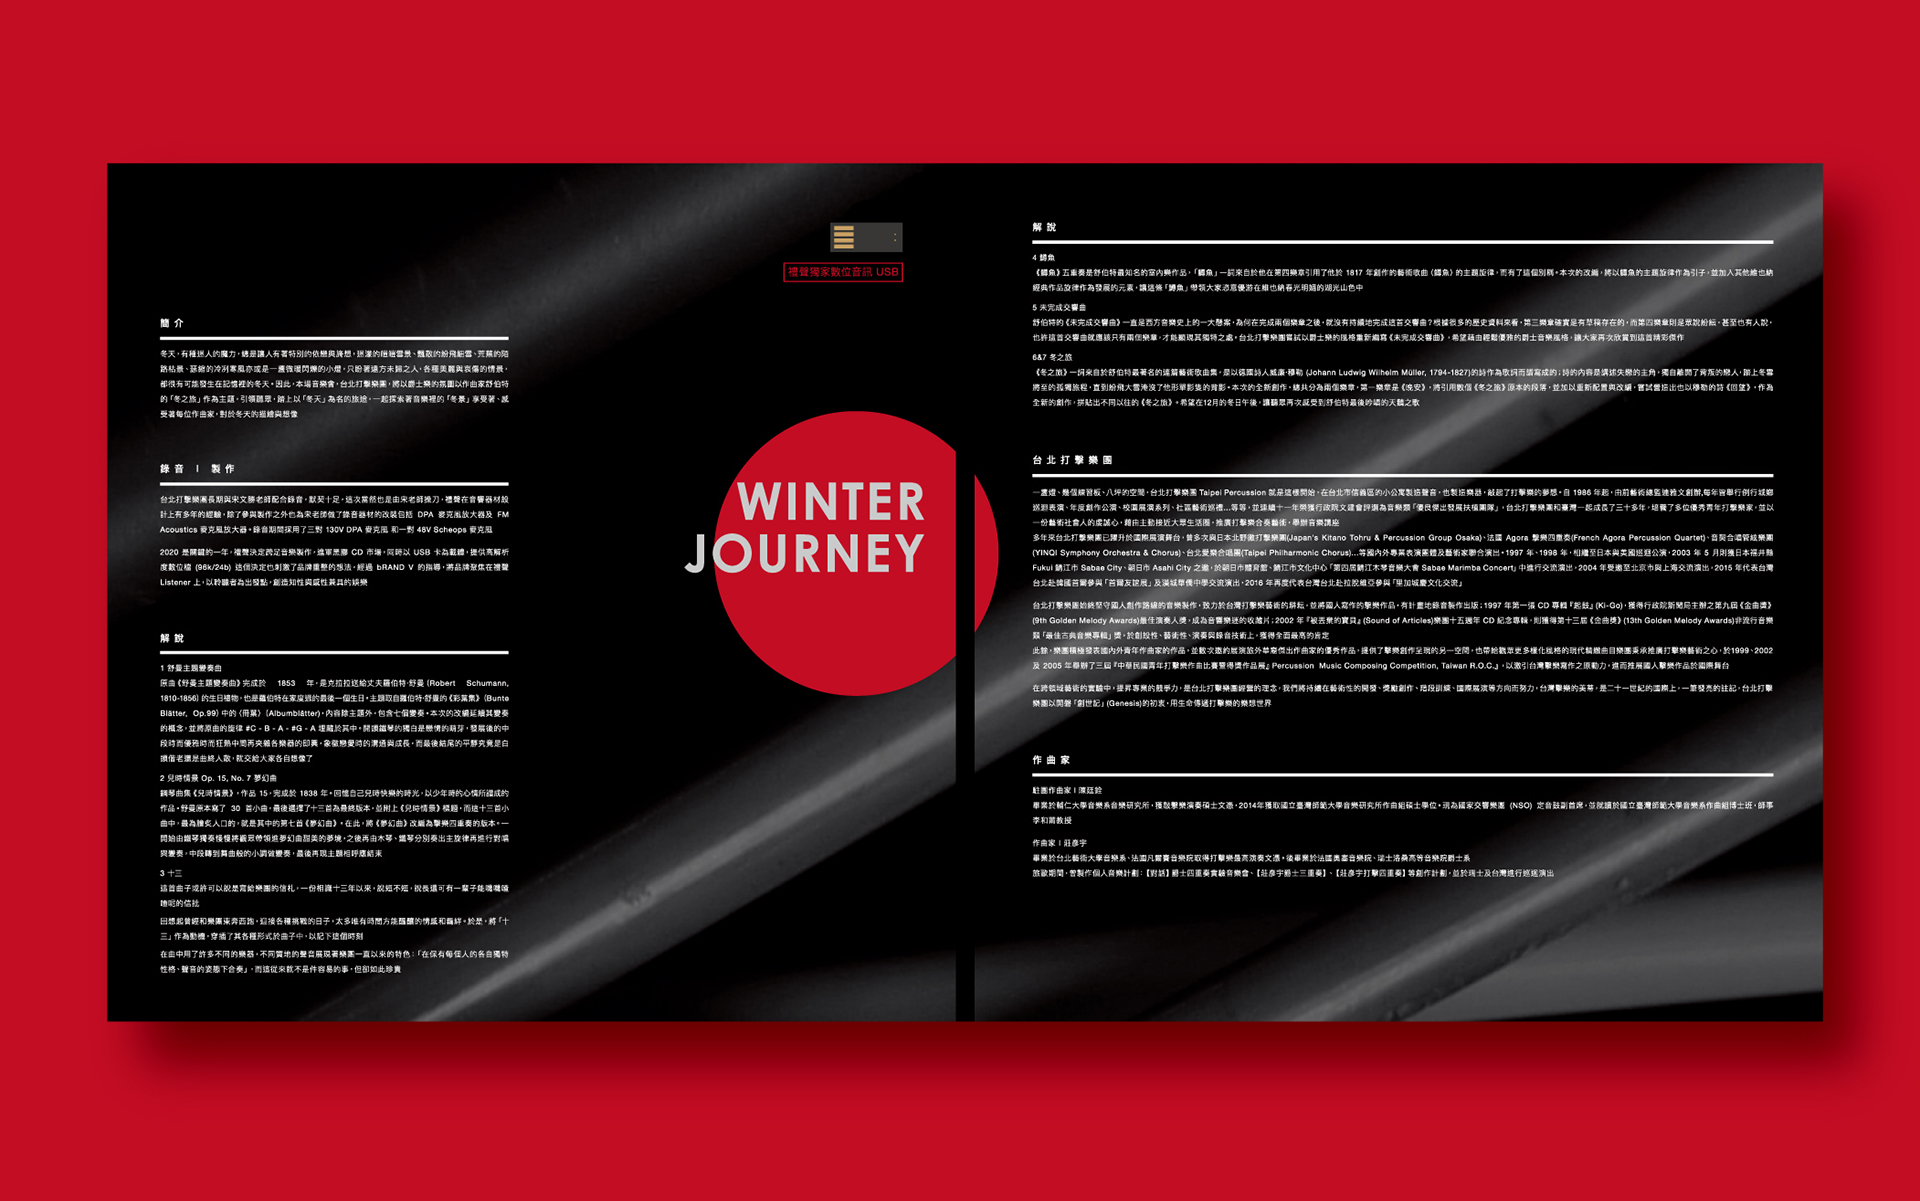 視覺設計｜ 禮聲音樂 冬之旅 專輯包裝視覺設計｜ bRANDV 畢爾威品牌設計